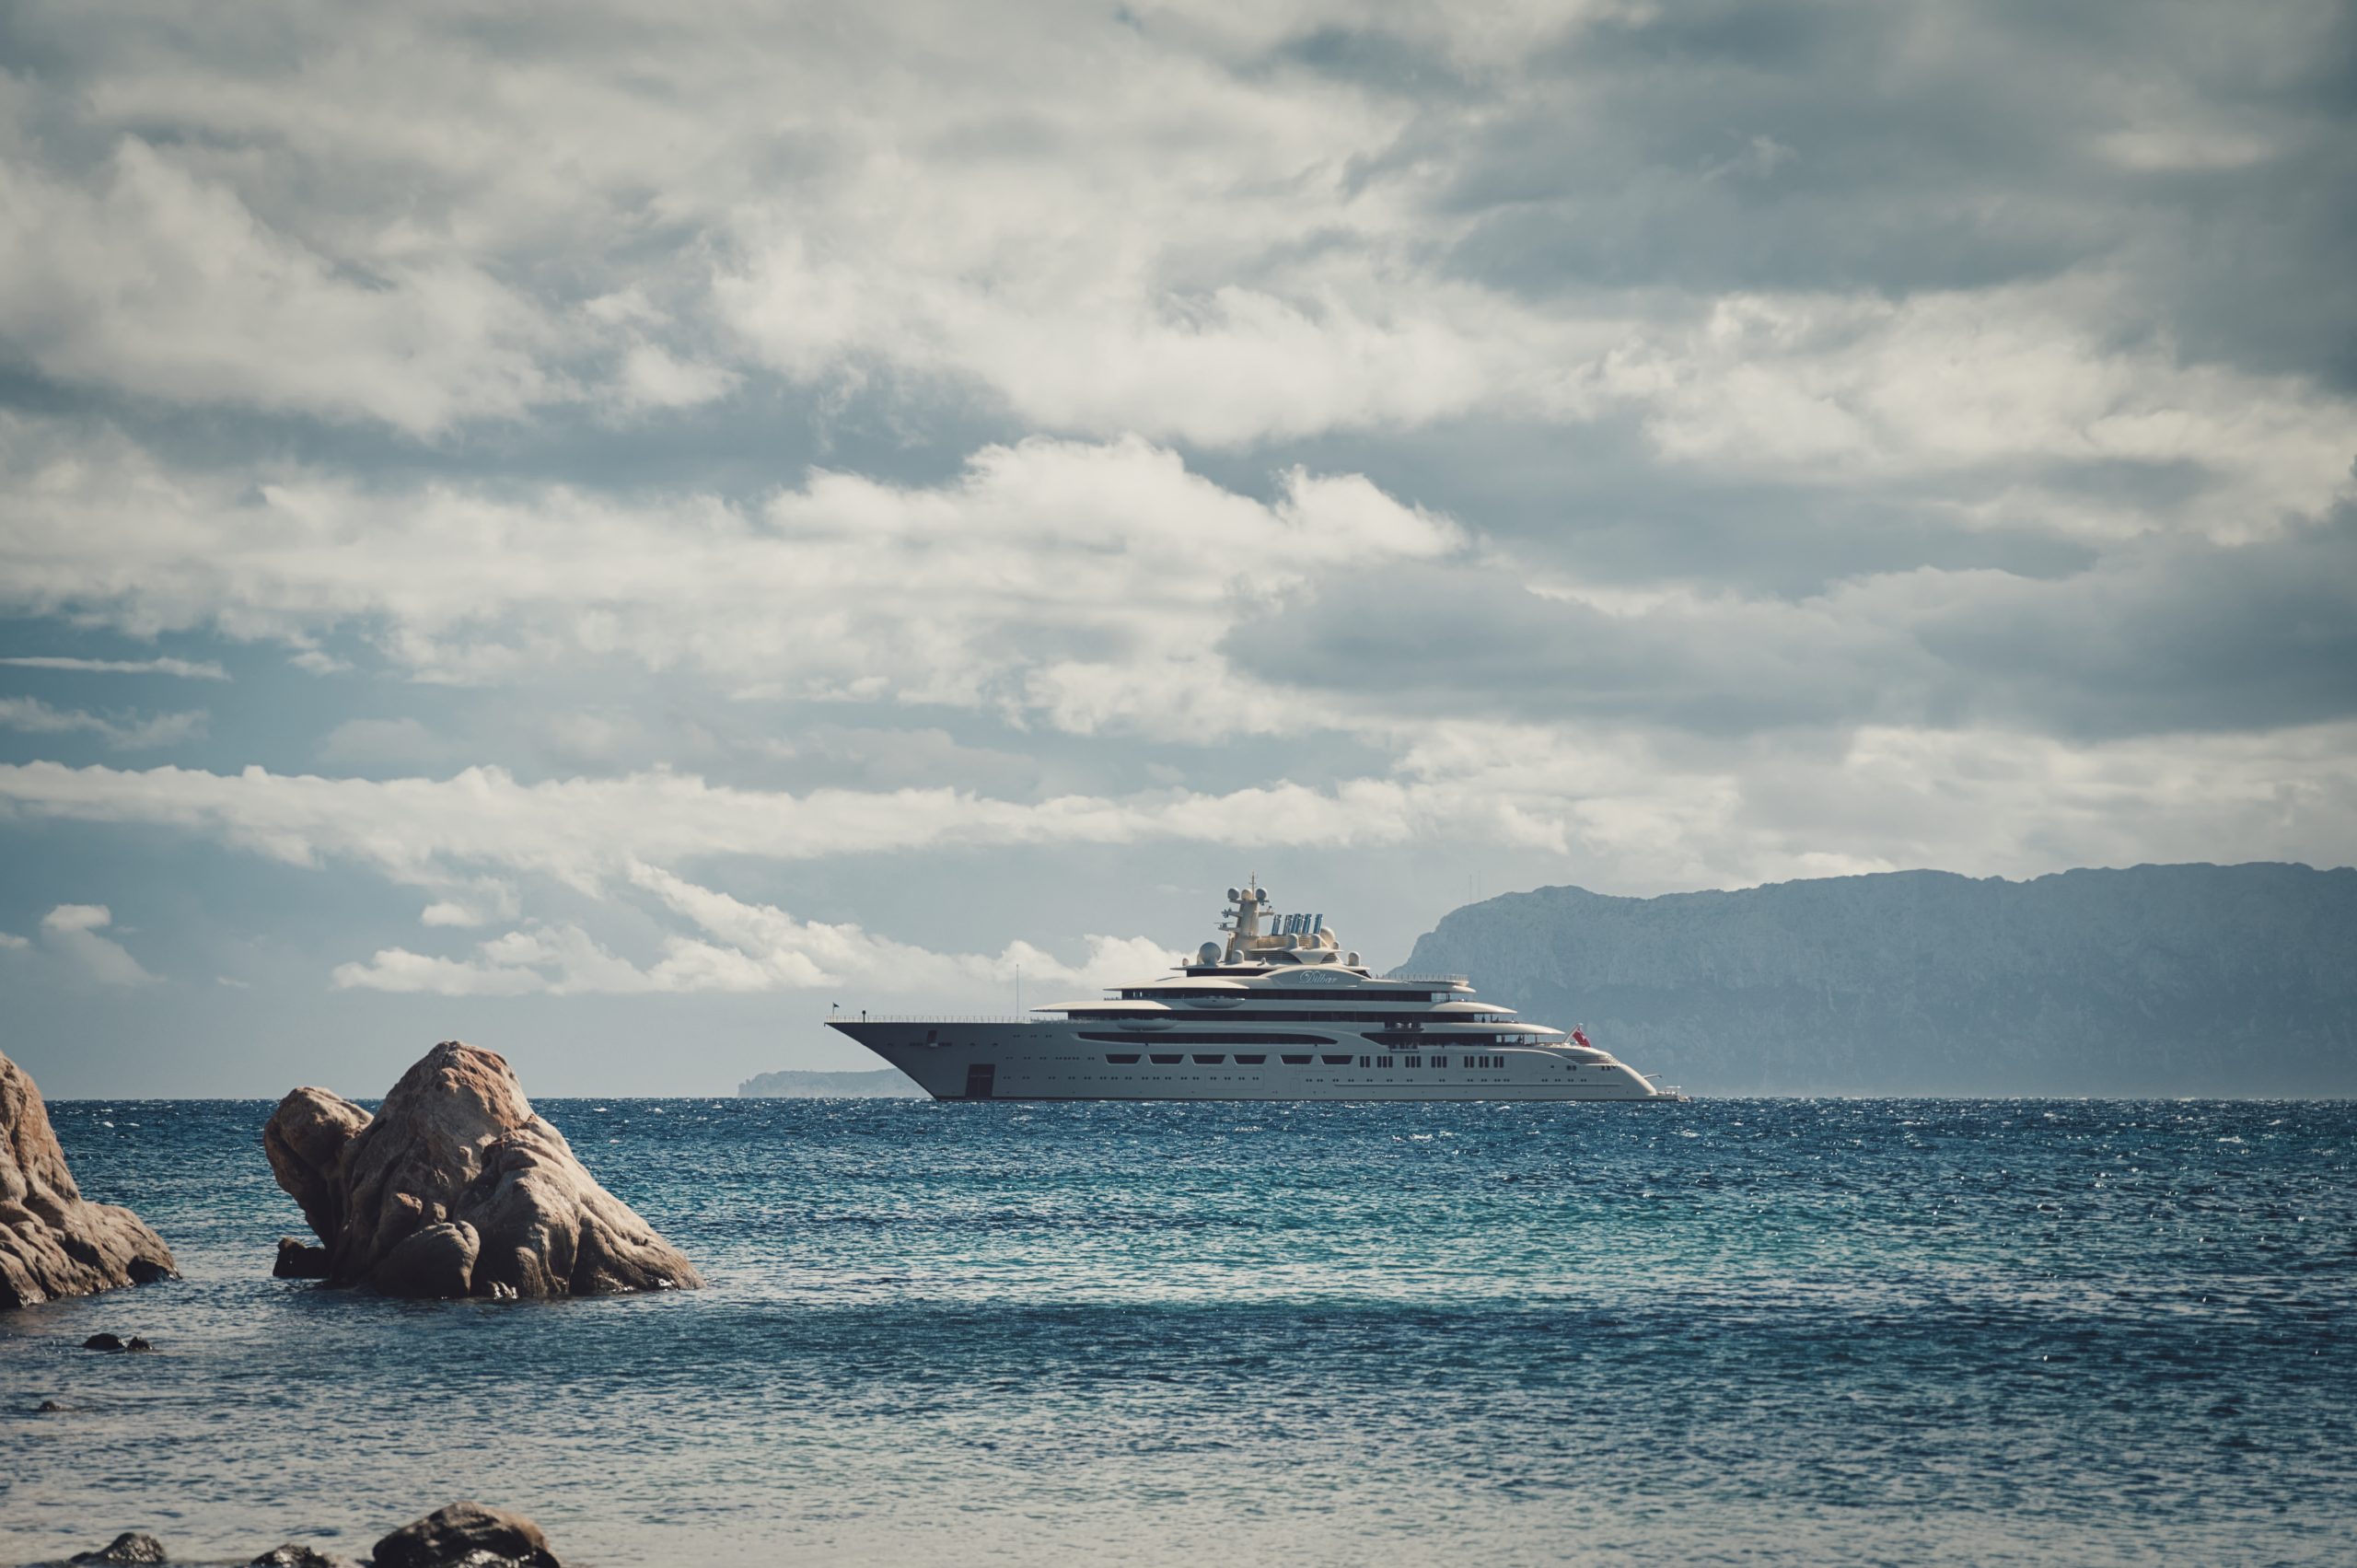 Należący do rosyjskiego oligarchy luksusowy jacht, fot. federico stevanin / Shutterstock.com